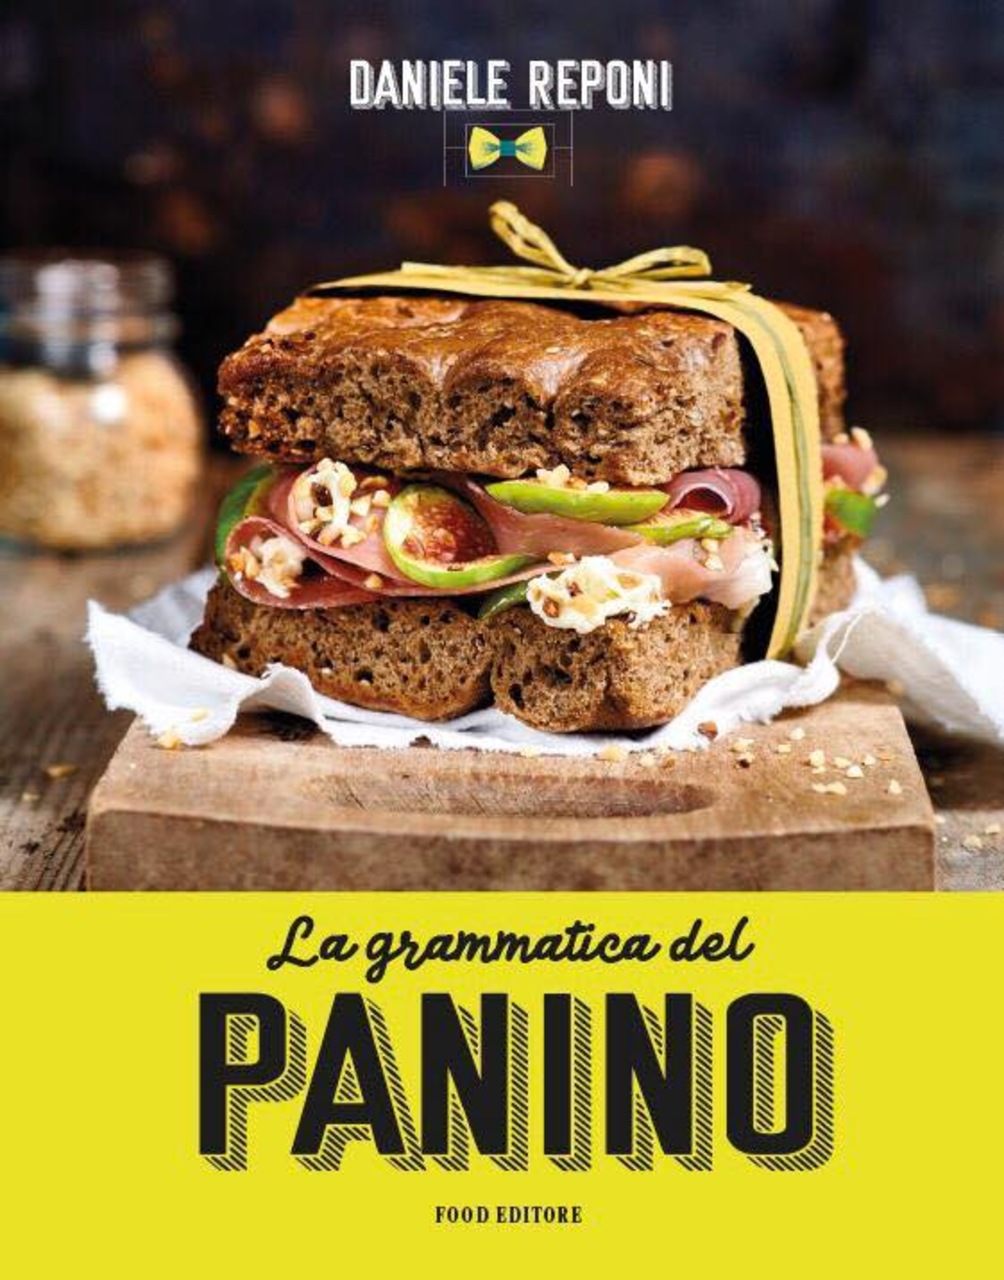 Panino gourmet: la copertina del libro “La grammatica del panino” di Daniele Reponi